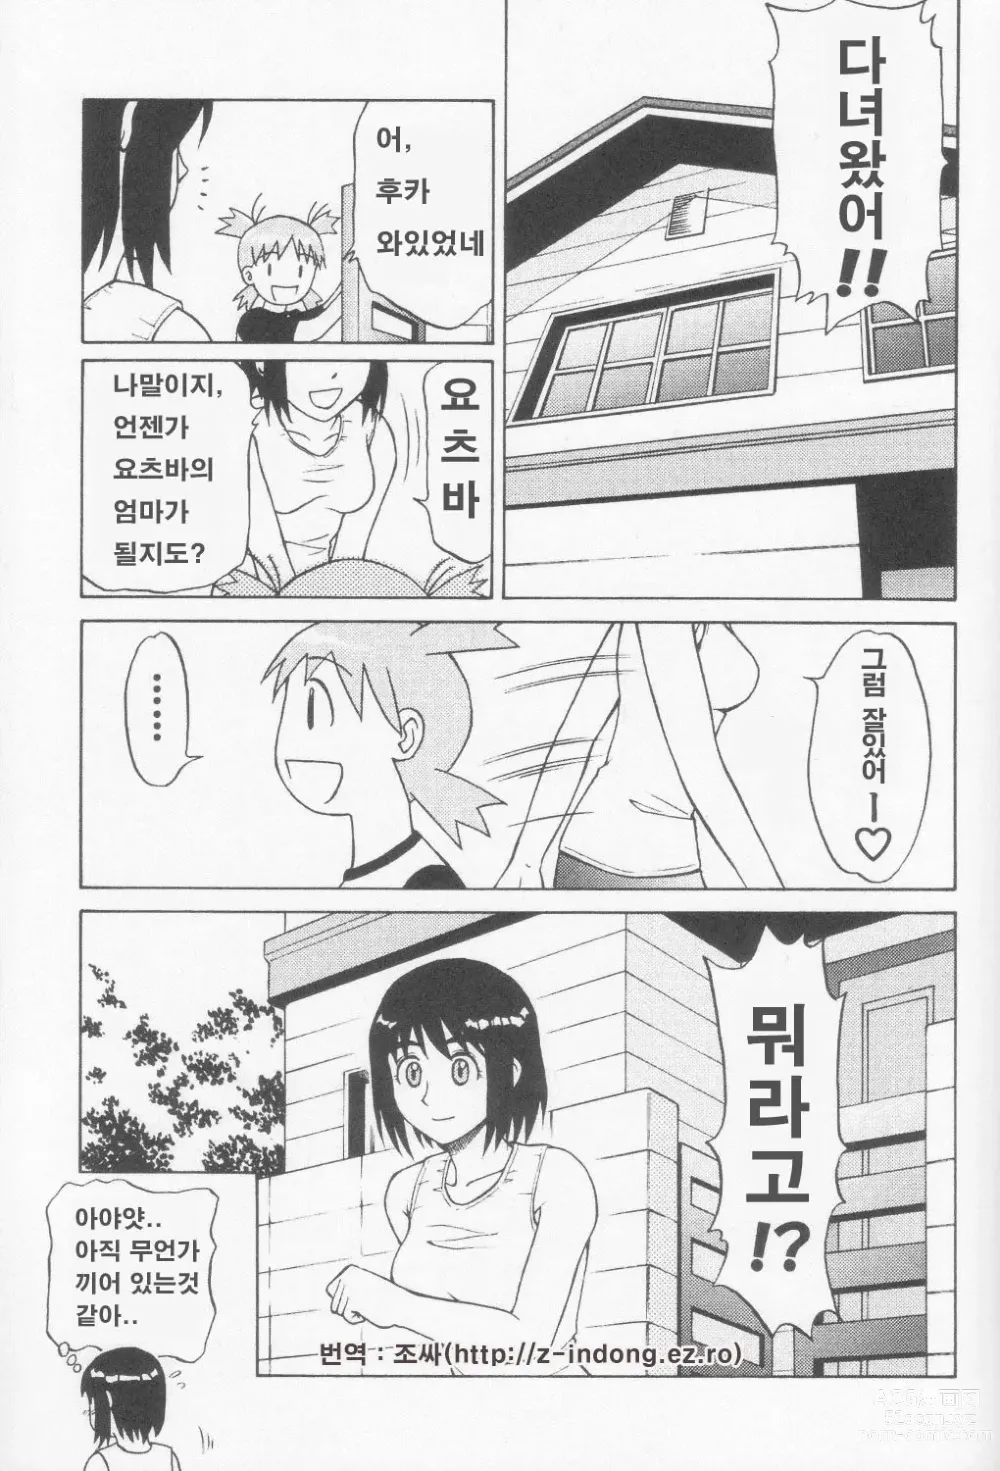 Page 24 of doujinshi Tou-chan xx no tekidatta